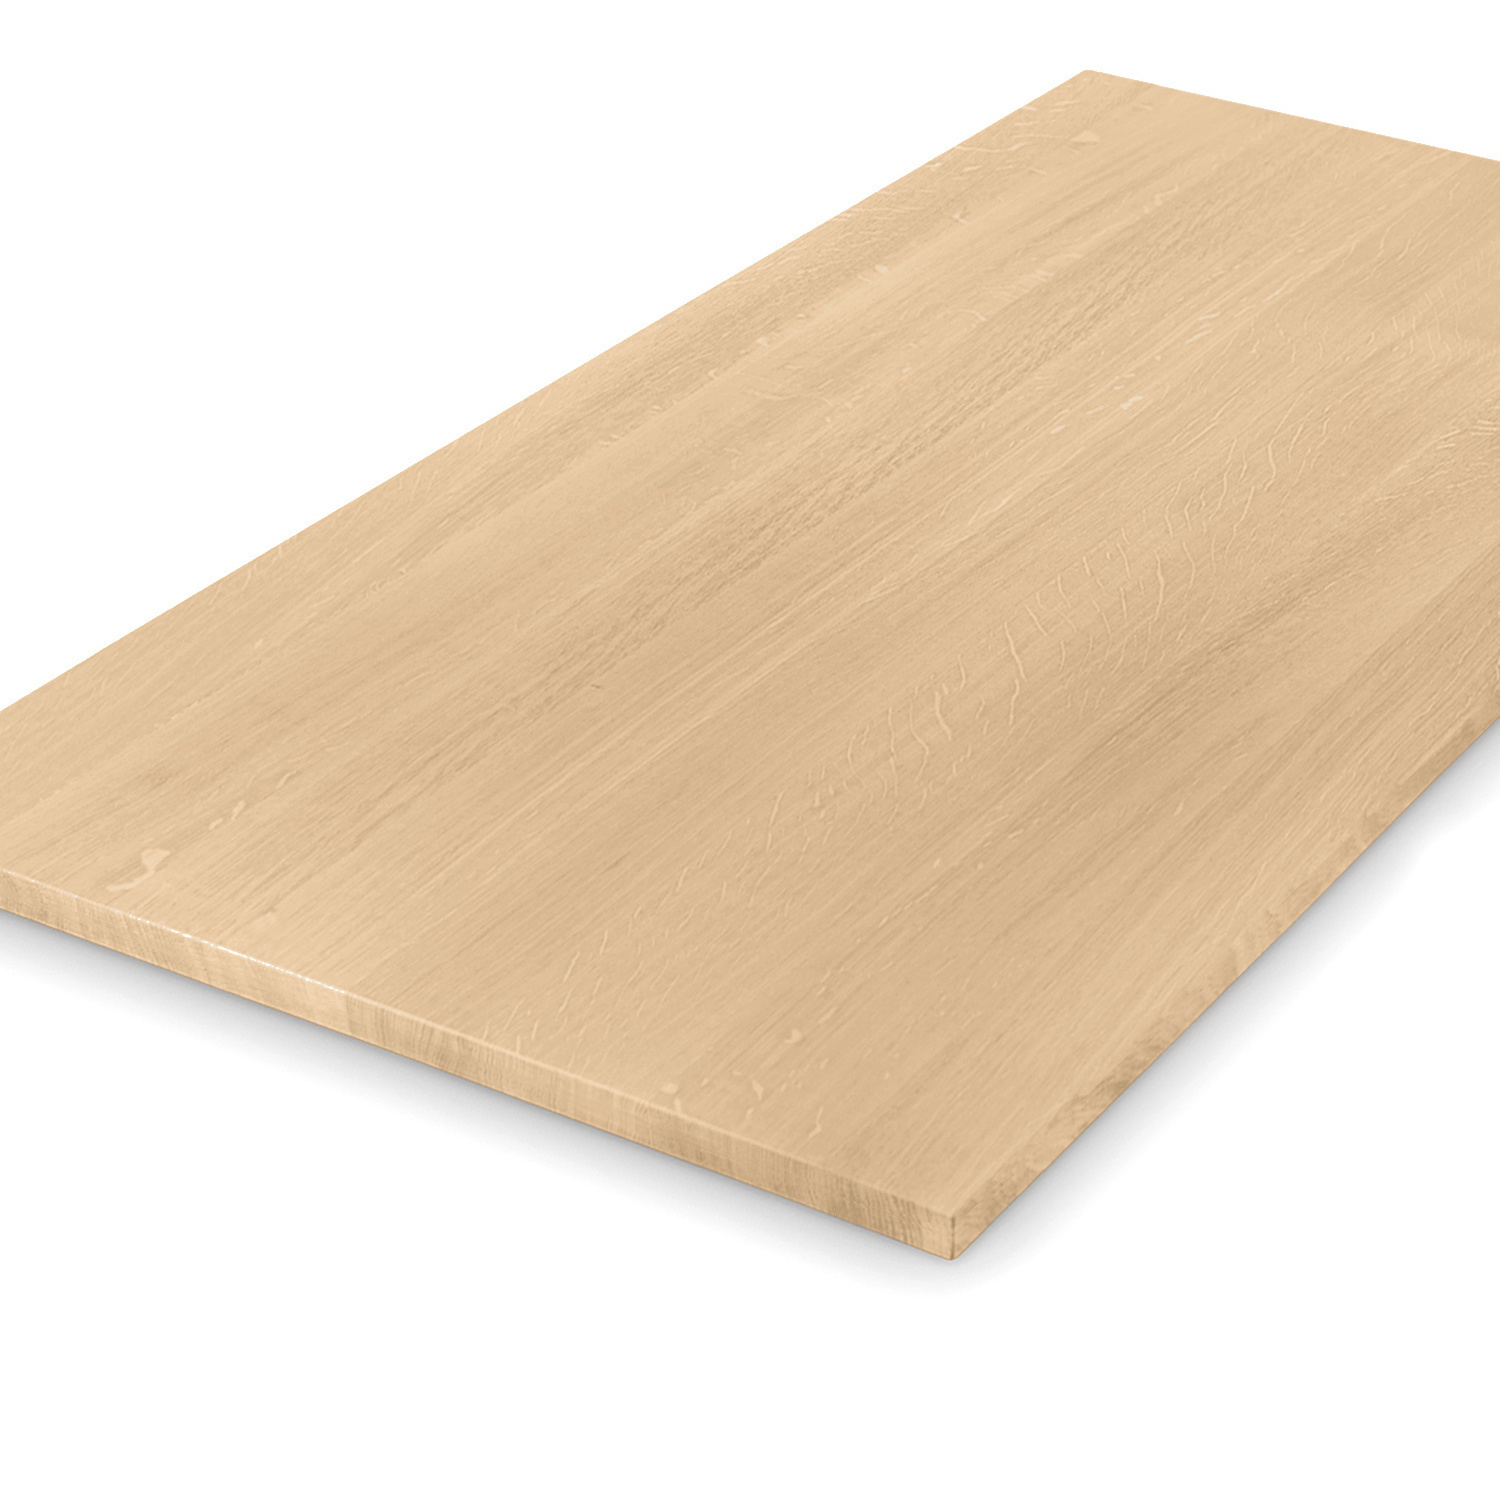  Tischplatte Eiche nach Maß - 2,3 cm dick - Eichenholz A-Qualität - Eiche Tischplatte massiv - verleimt & künstlich getrocknet (HF 8-12%) - 50-120x50-300 cm